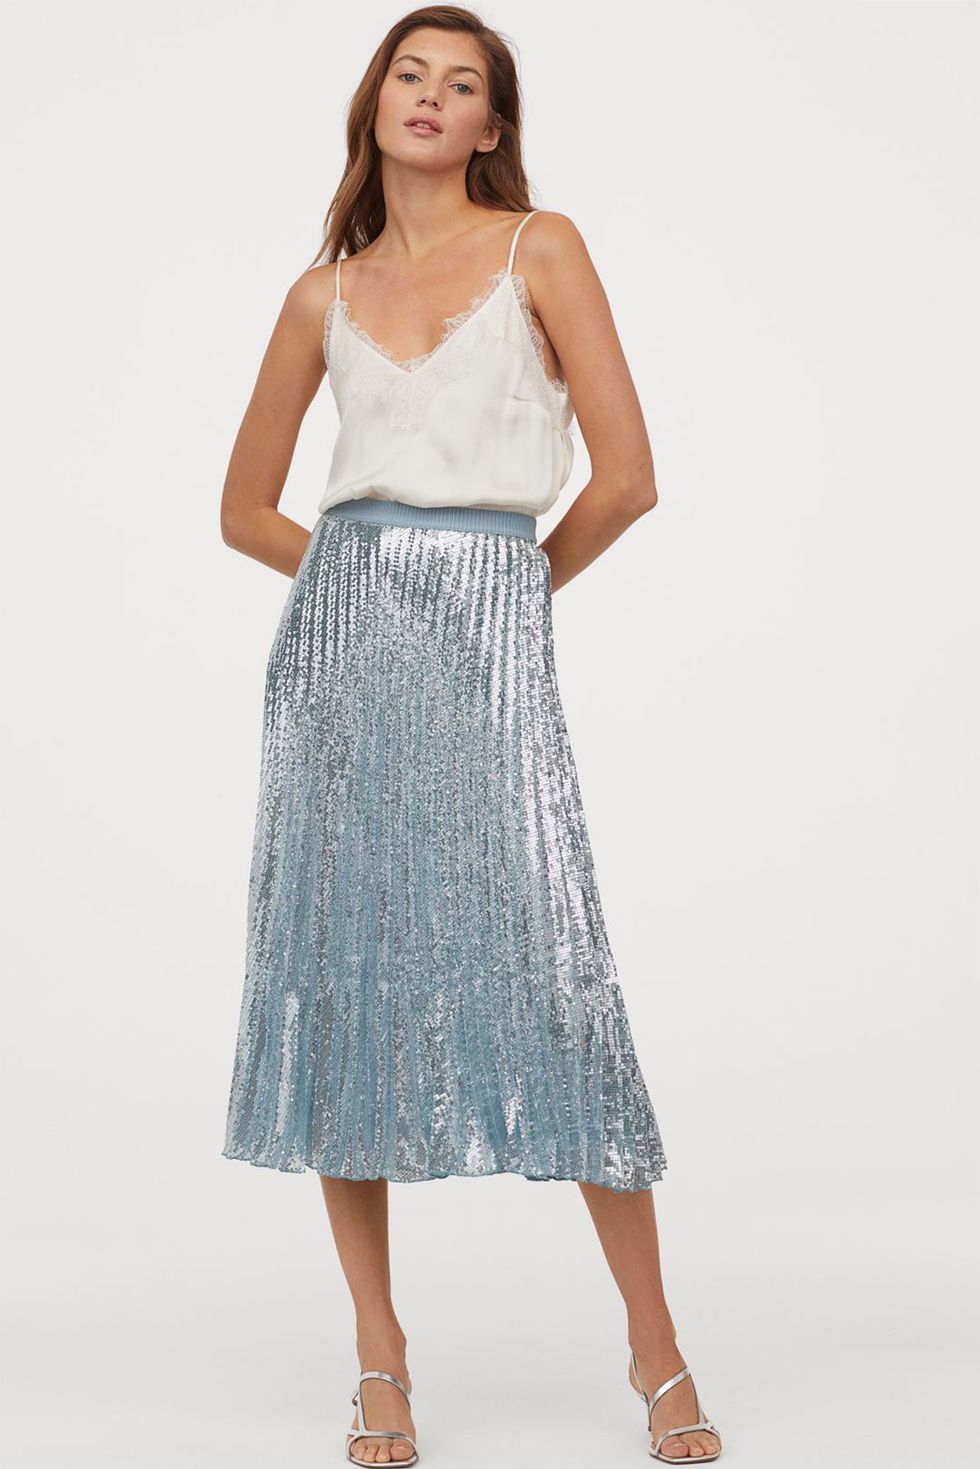 La increíble falda plisada de H&M es puro estilo